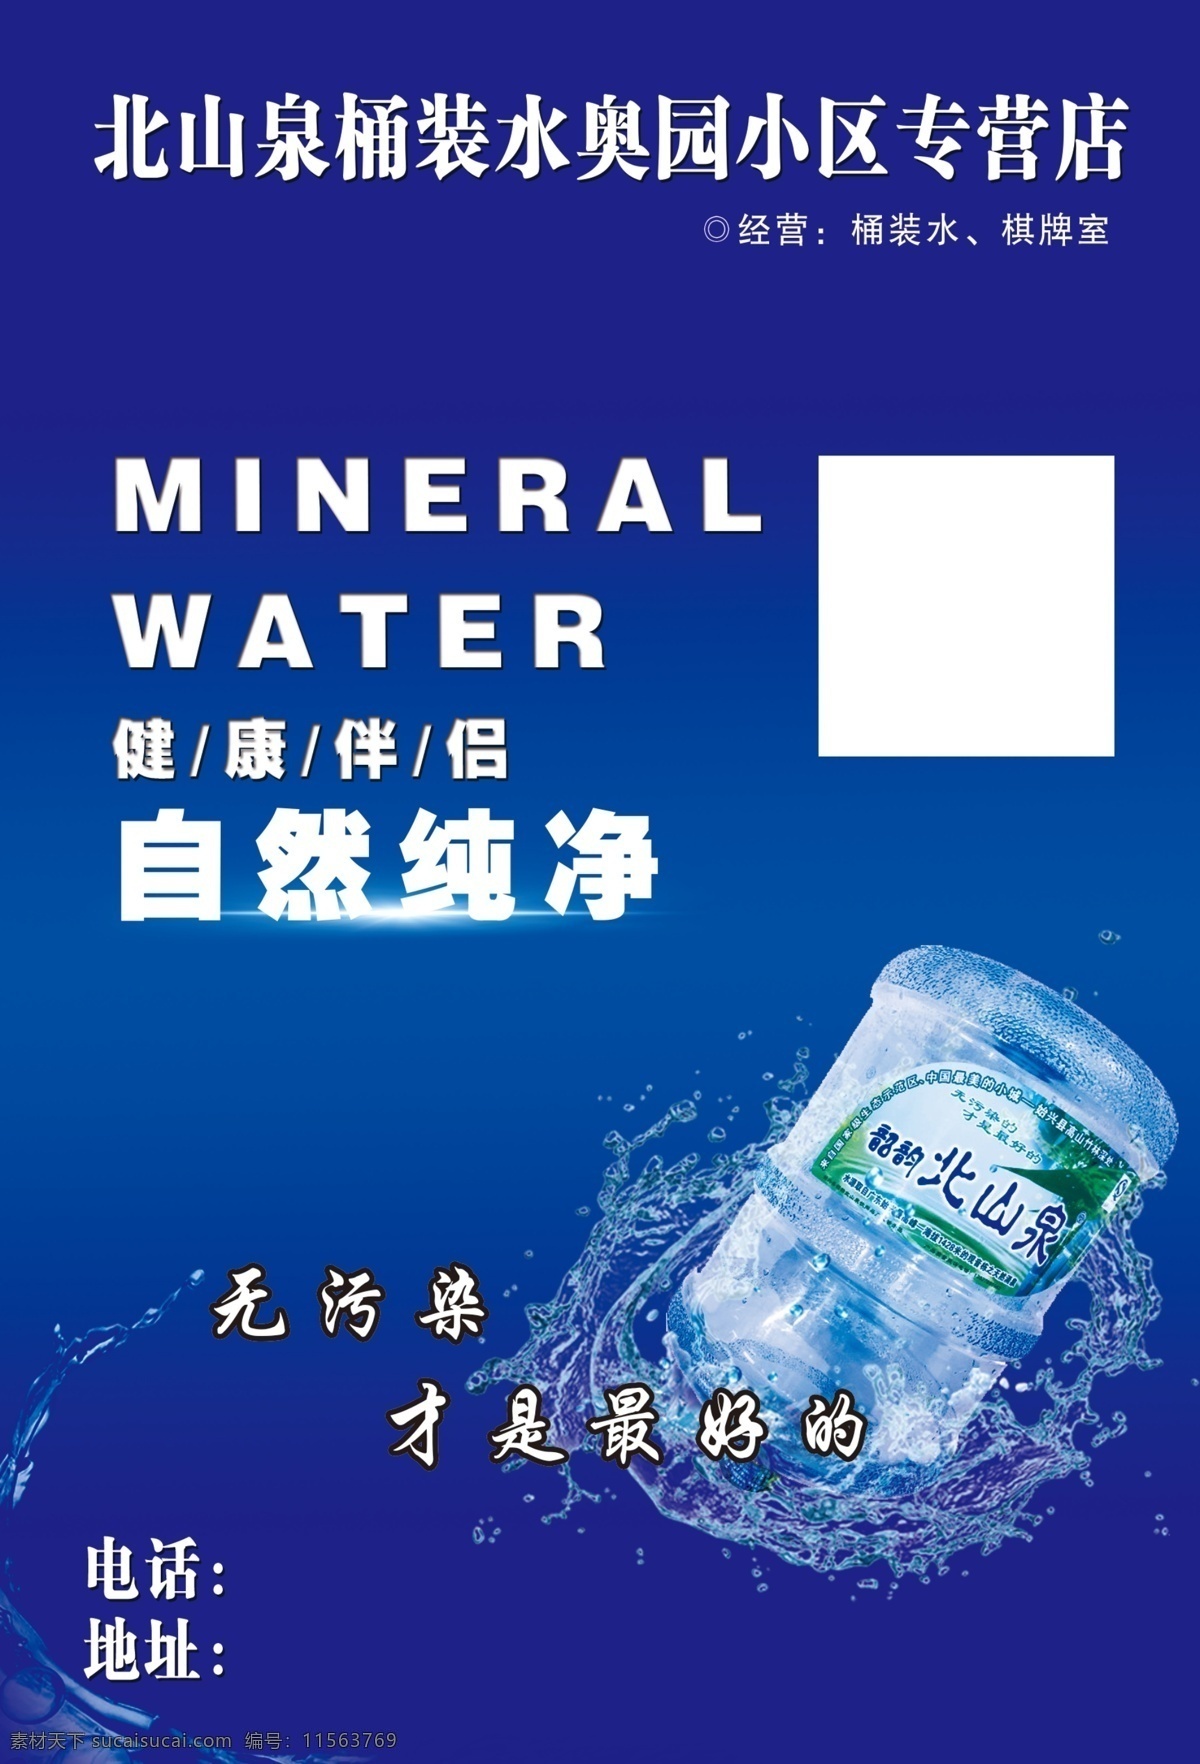 纯净水 蓝色 桶装水 蓝色海报 矿泉水 饮用水 宣传单 名片卡片